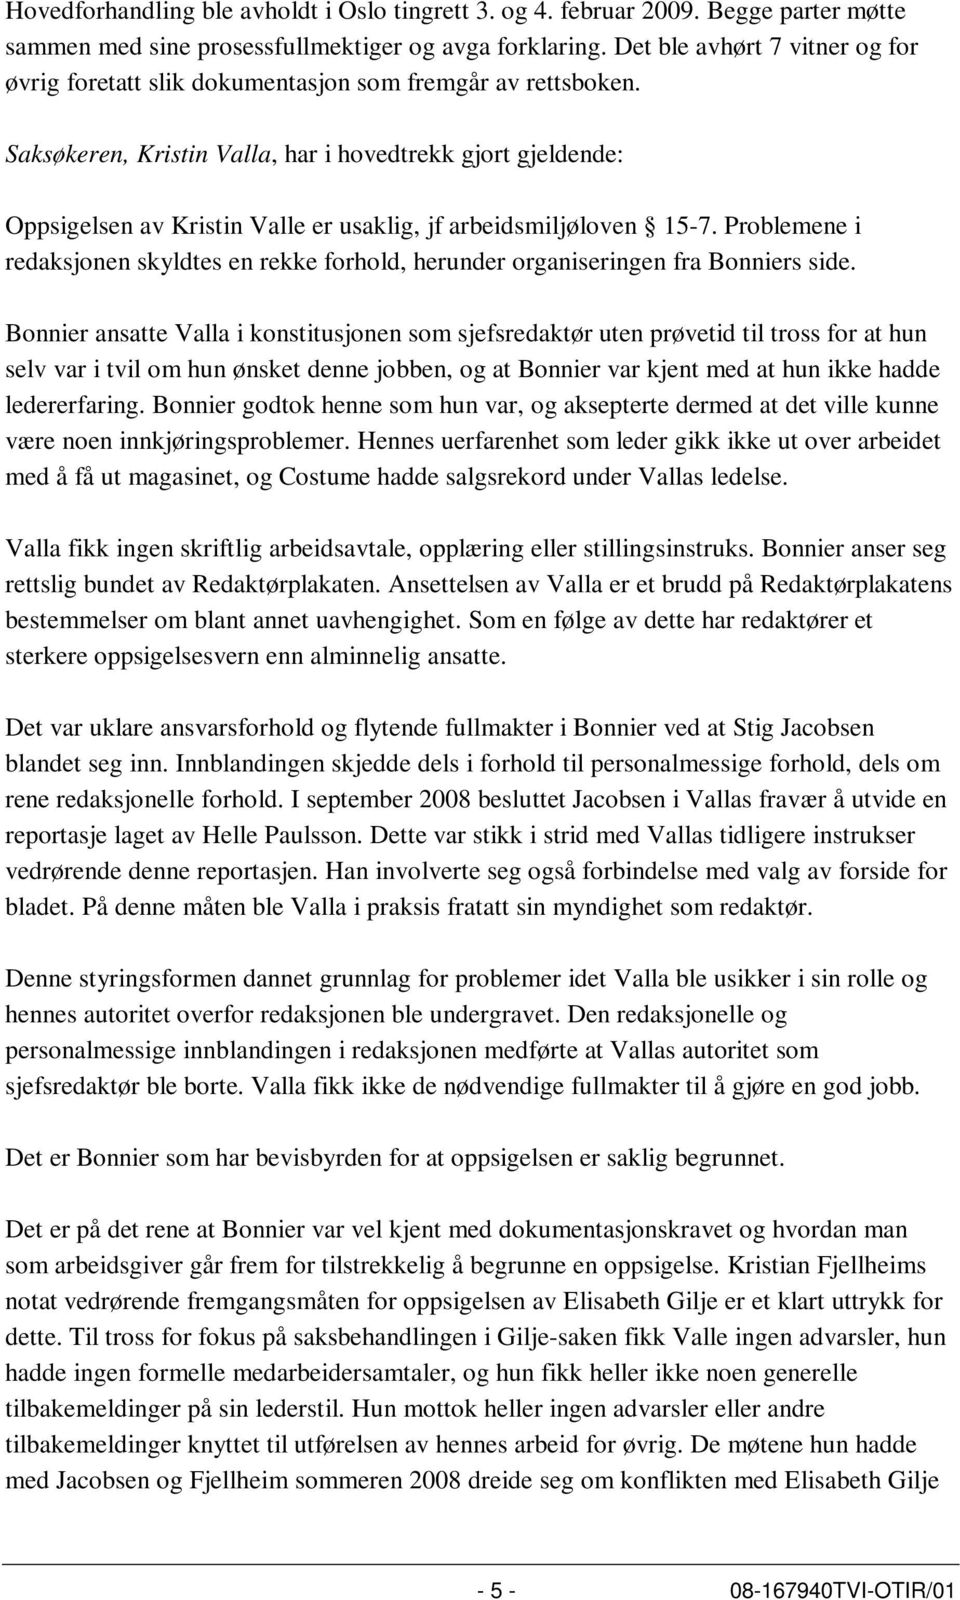 Saksøkeren, Kristin Valla, har i hovedtrekk gjort gjeldende: Oppsigelsen av Kristin Valle er usaklig, jf arbeidsmiljøloven 15-7.